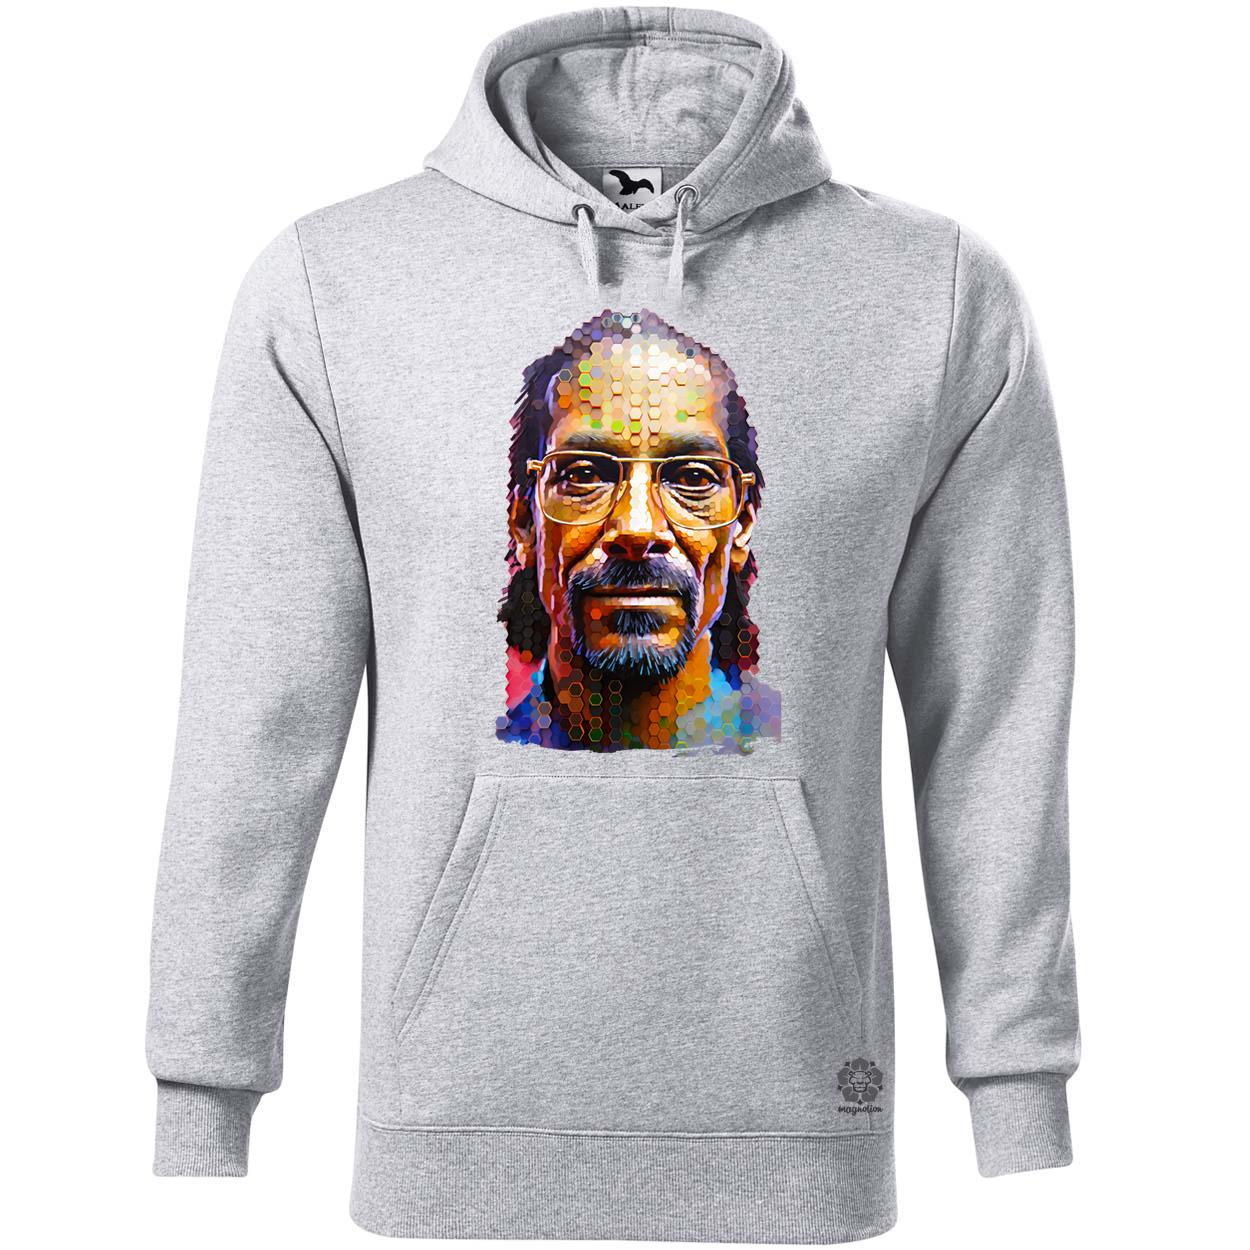 Snoop Dogg v1